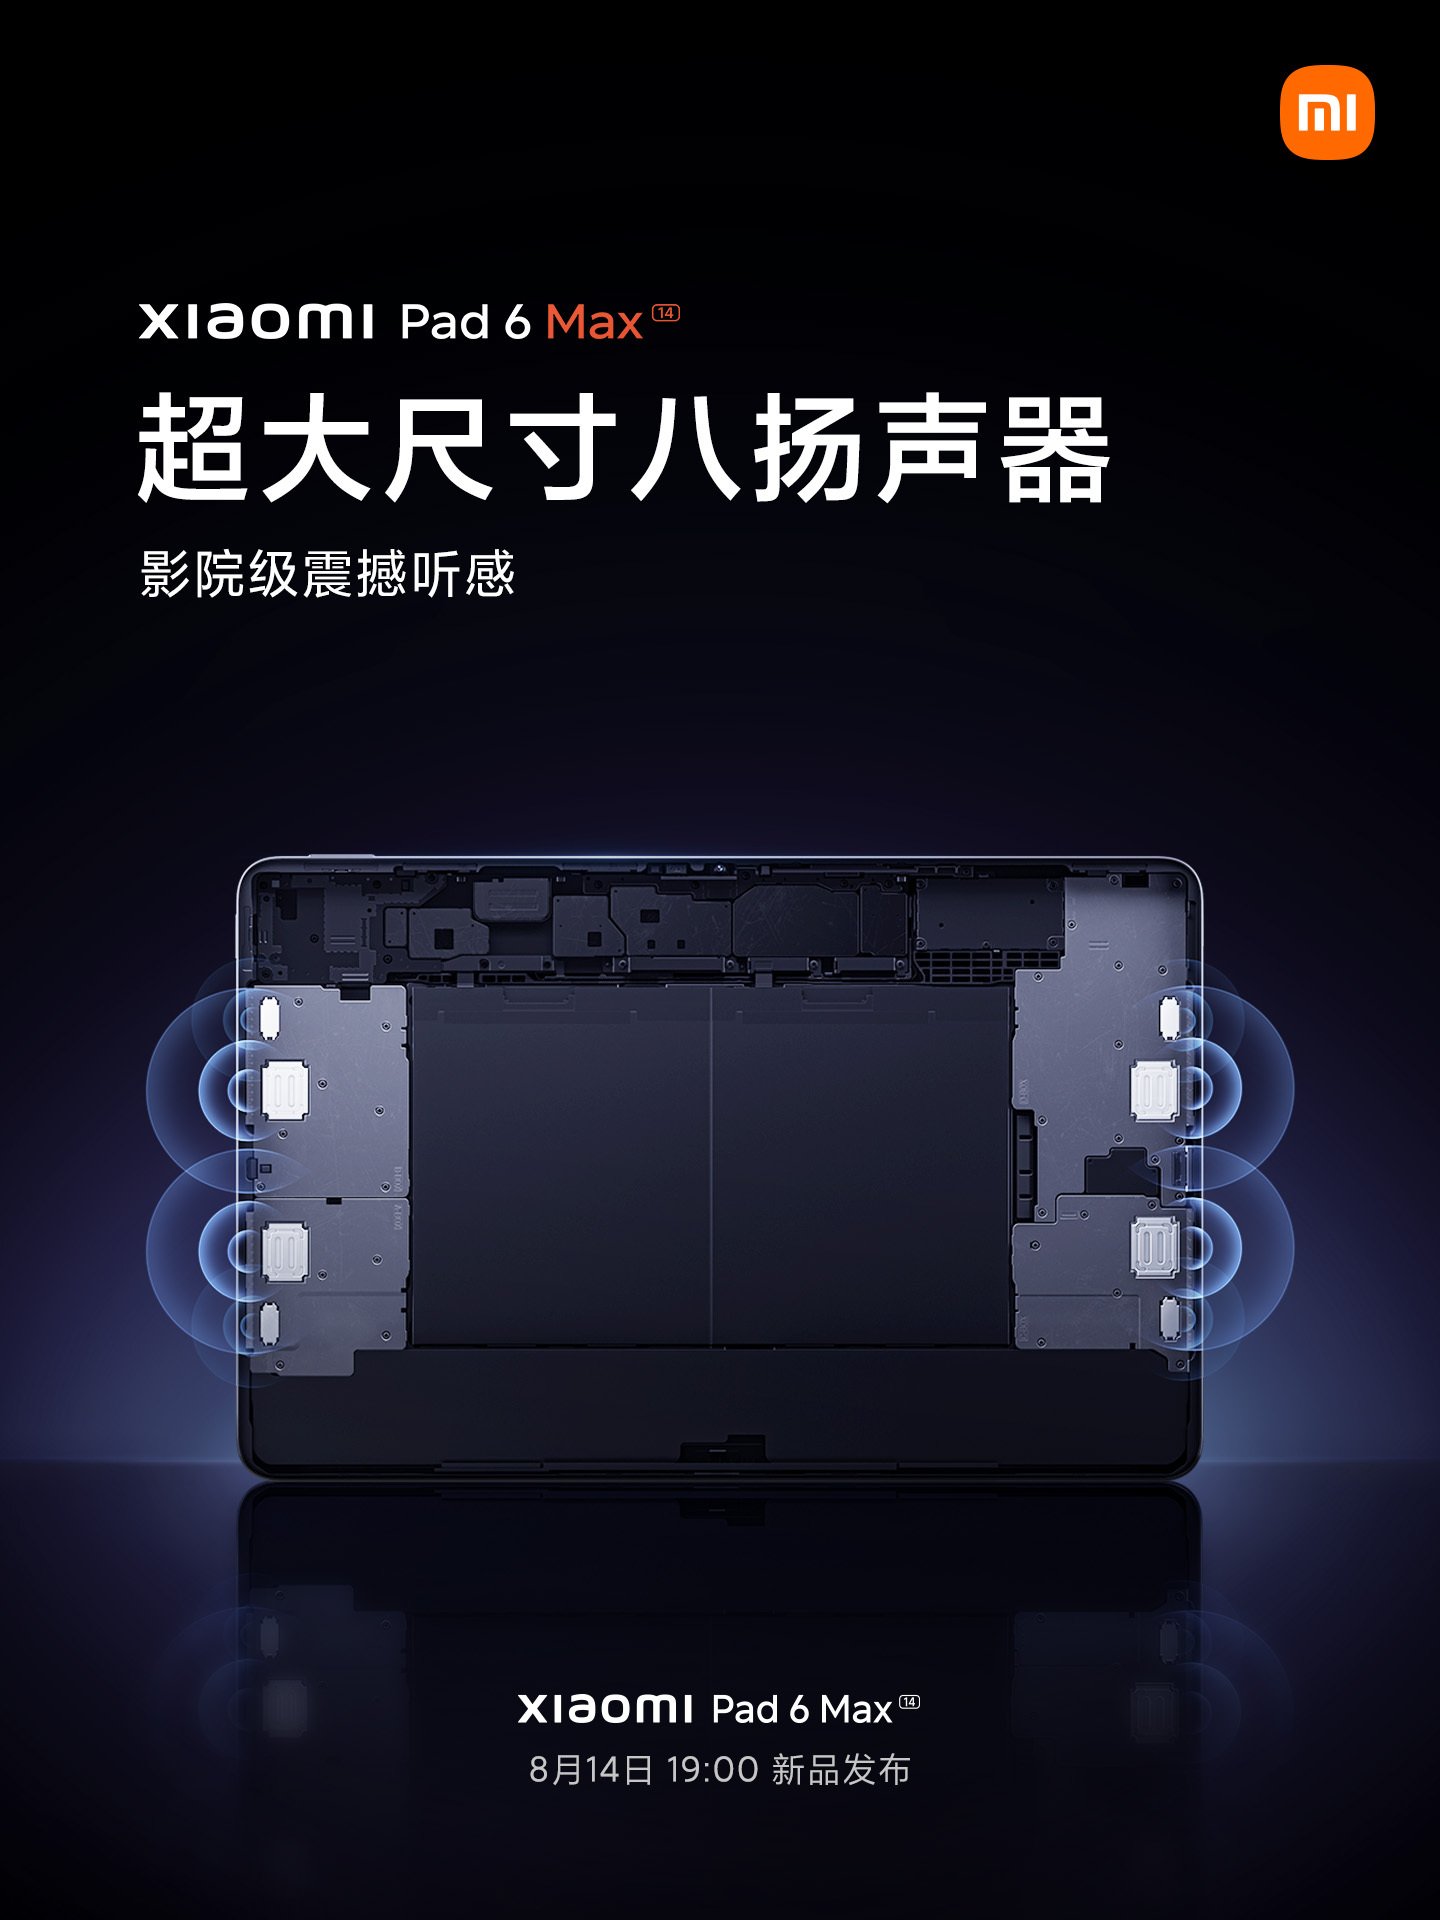 XIaomi Pad 6 Max speaker system